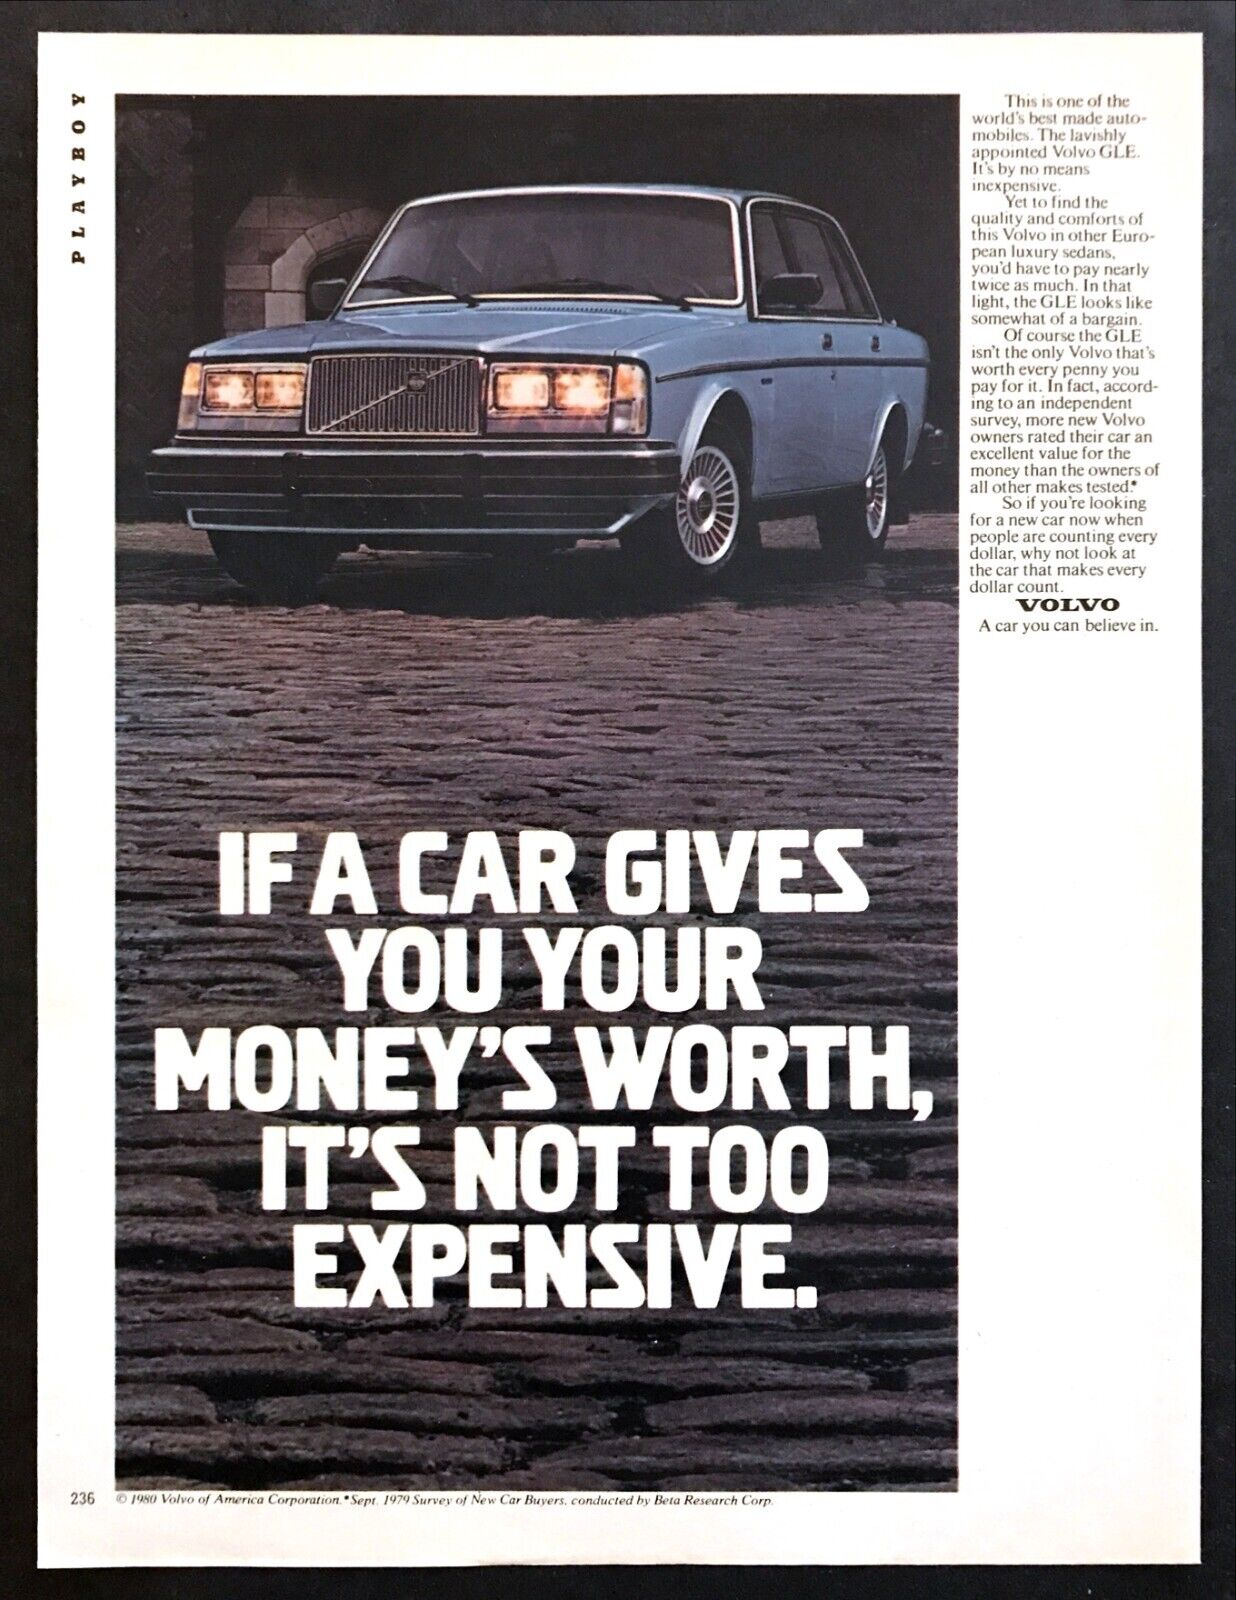 1981 Volvo Gle Luxury Sedan Photo "lavishly Appointed" Vintage Print Ad